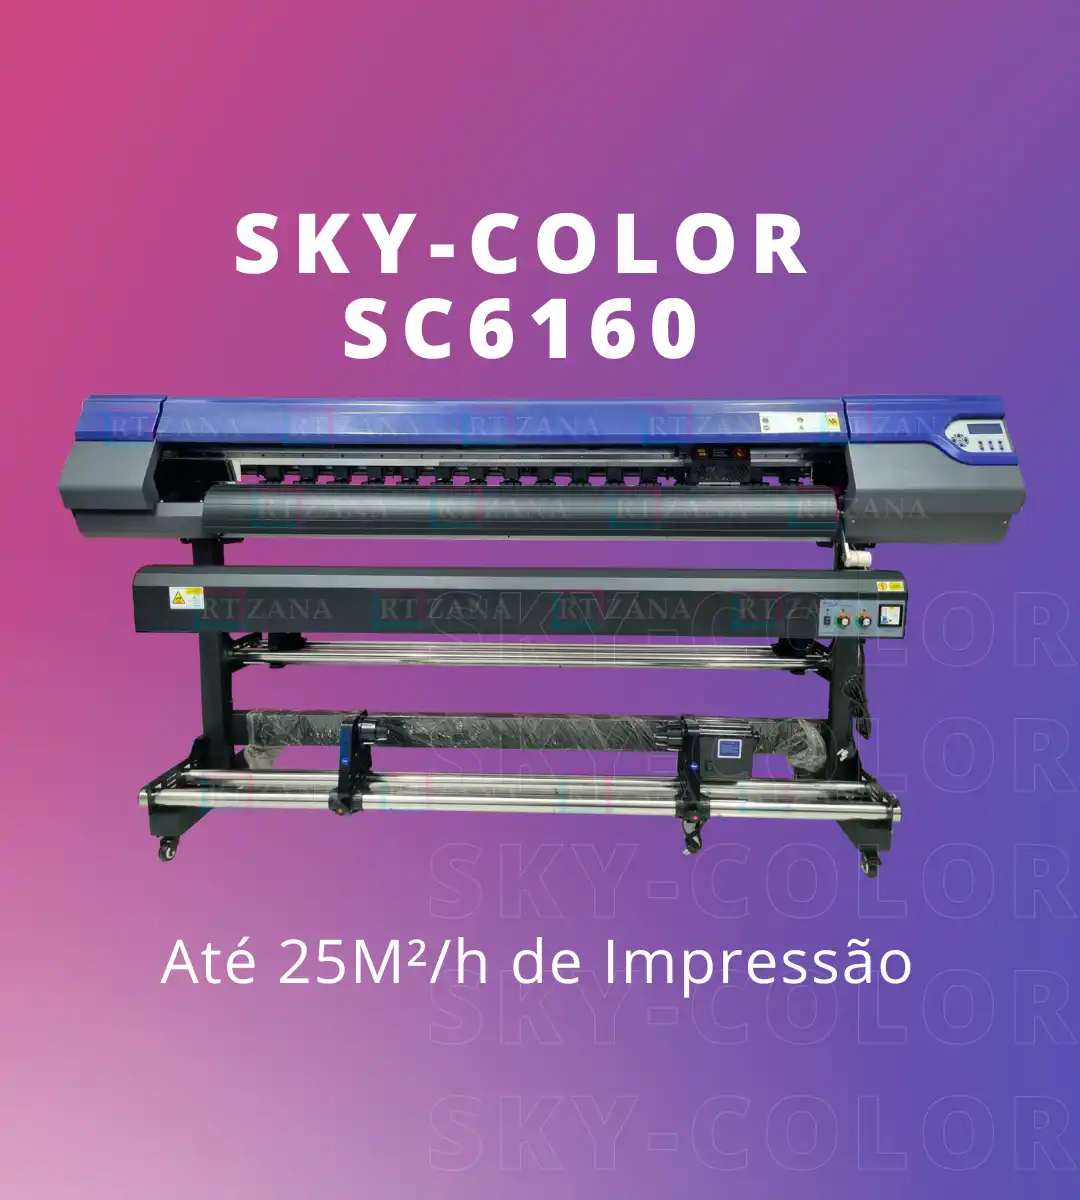 SKYCOLOR SC6160